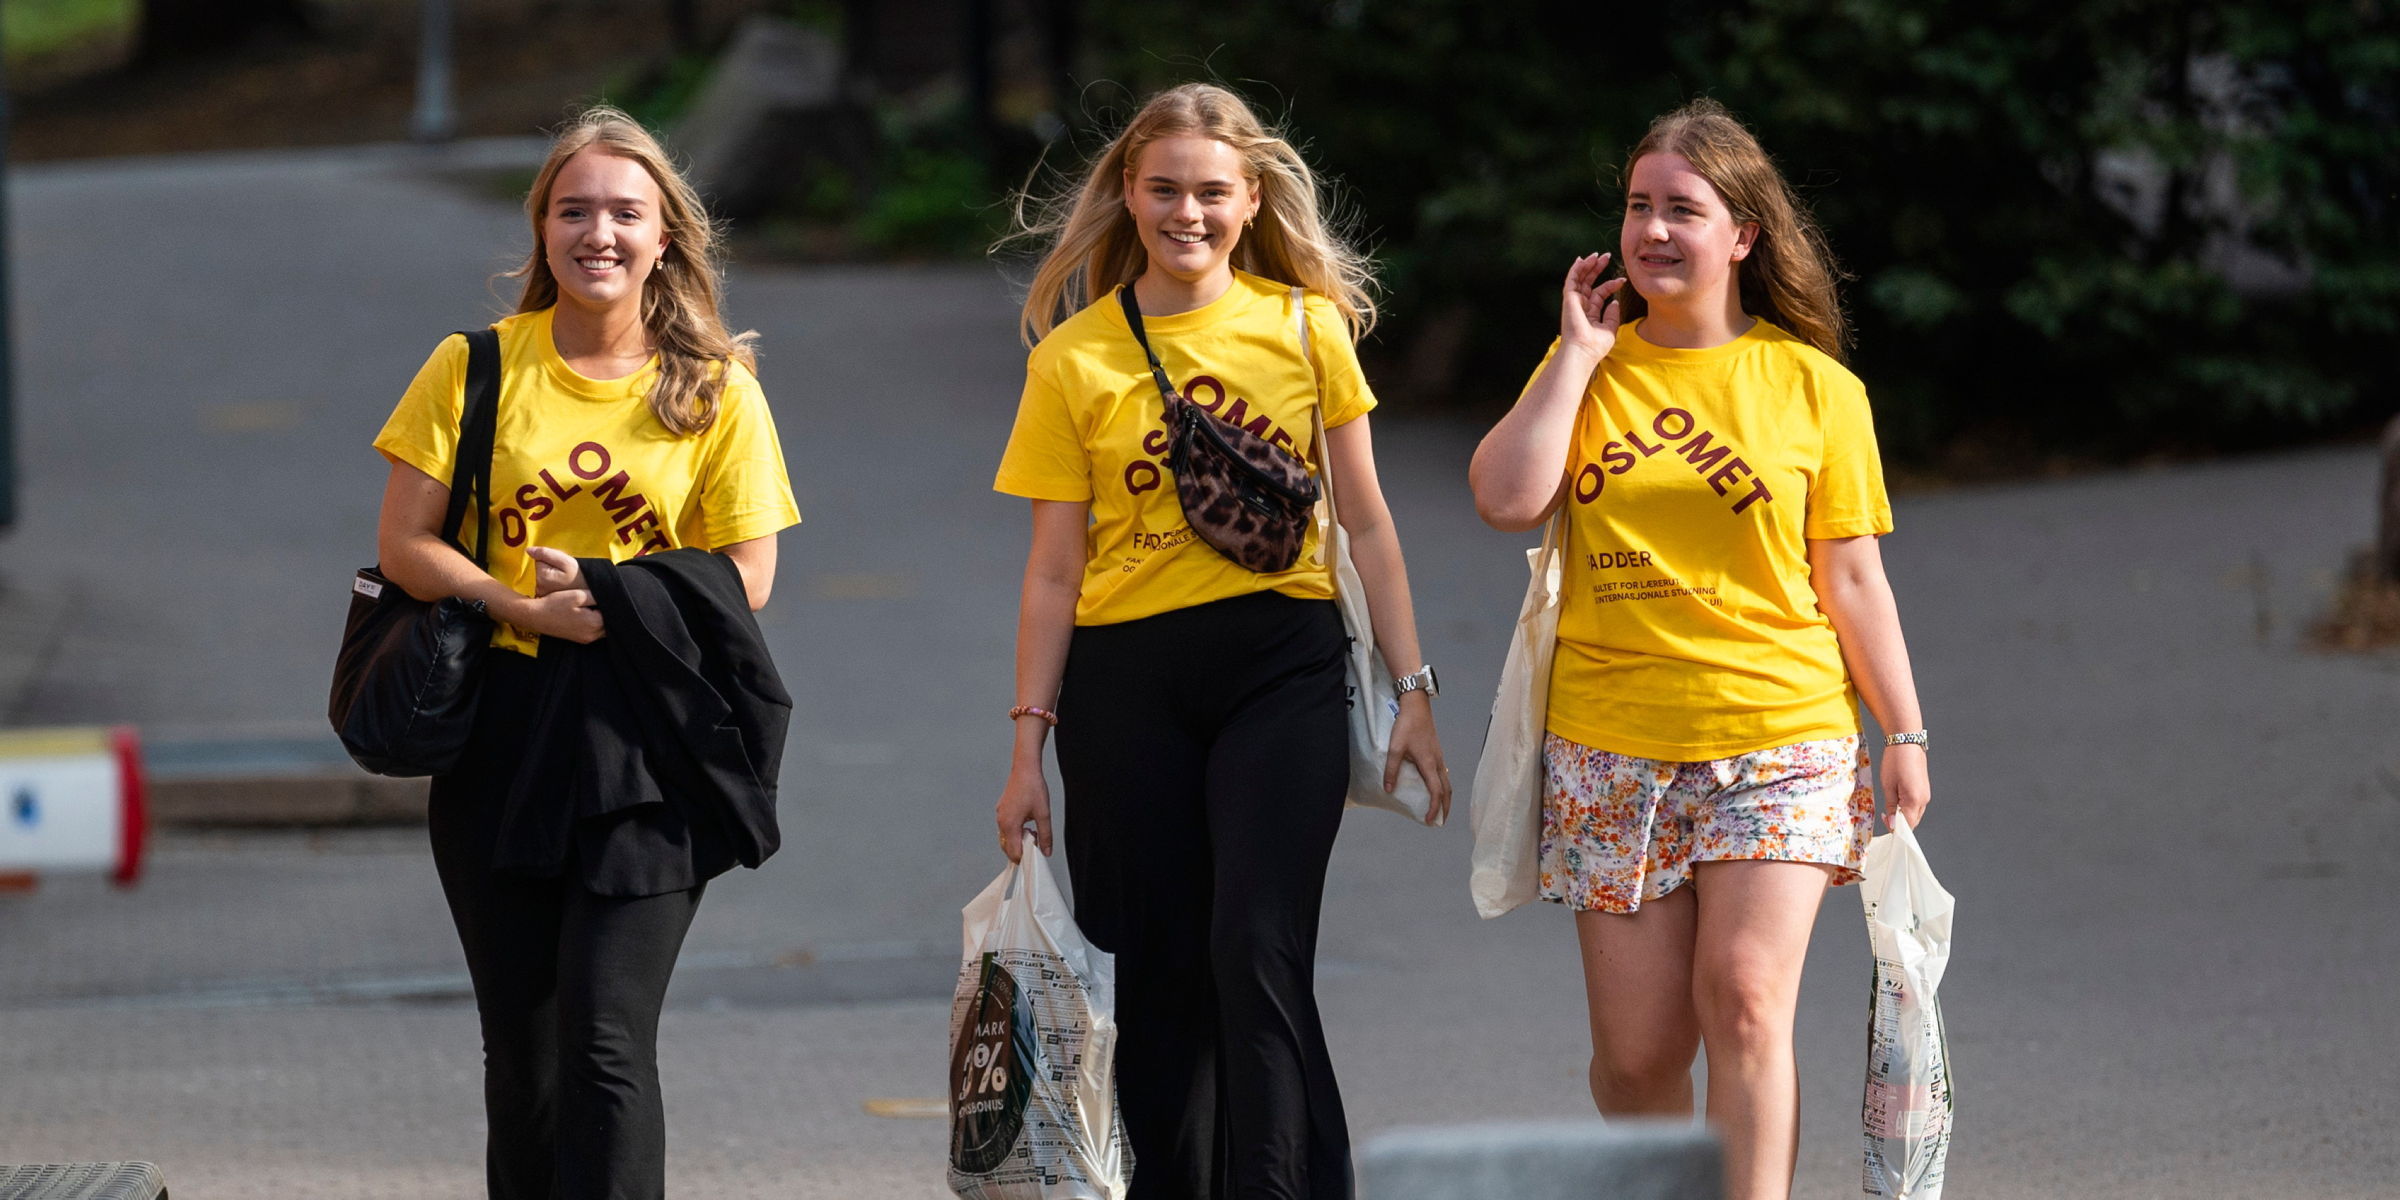 Tre OsloMet-studenter i gule t-skjorter kommer gående mens de smiler.